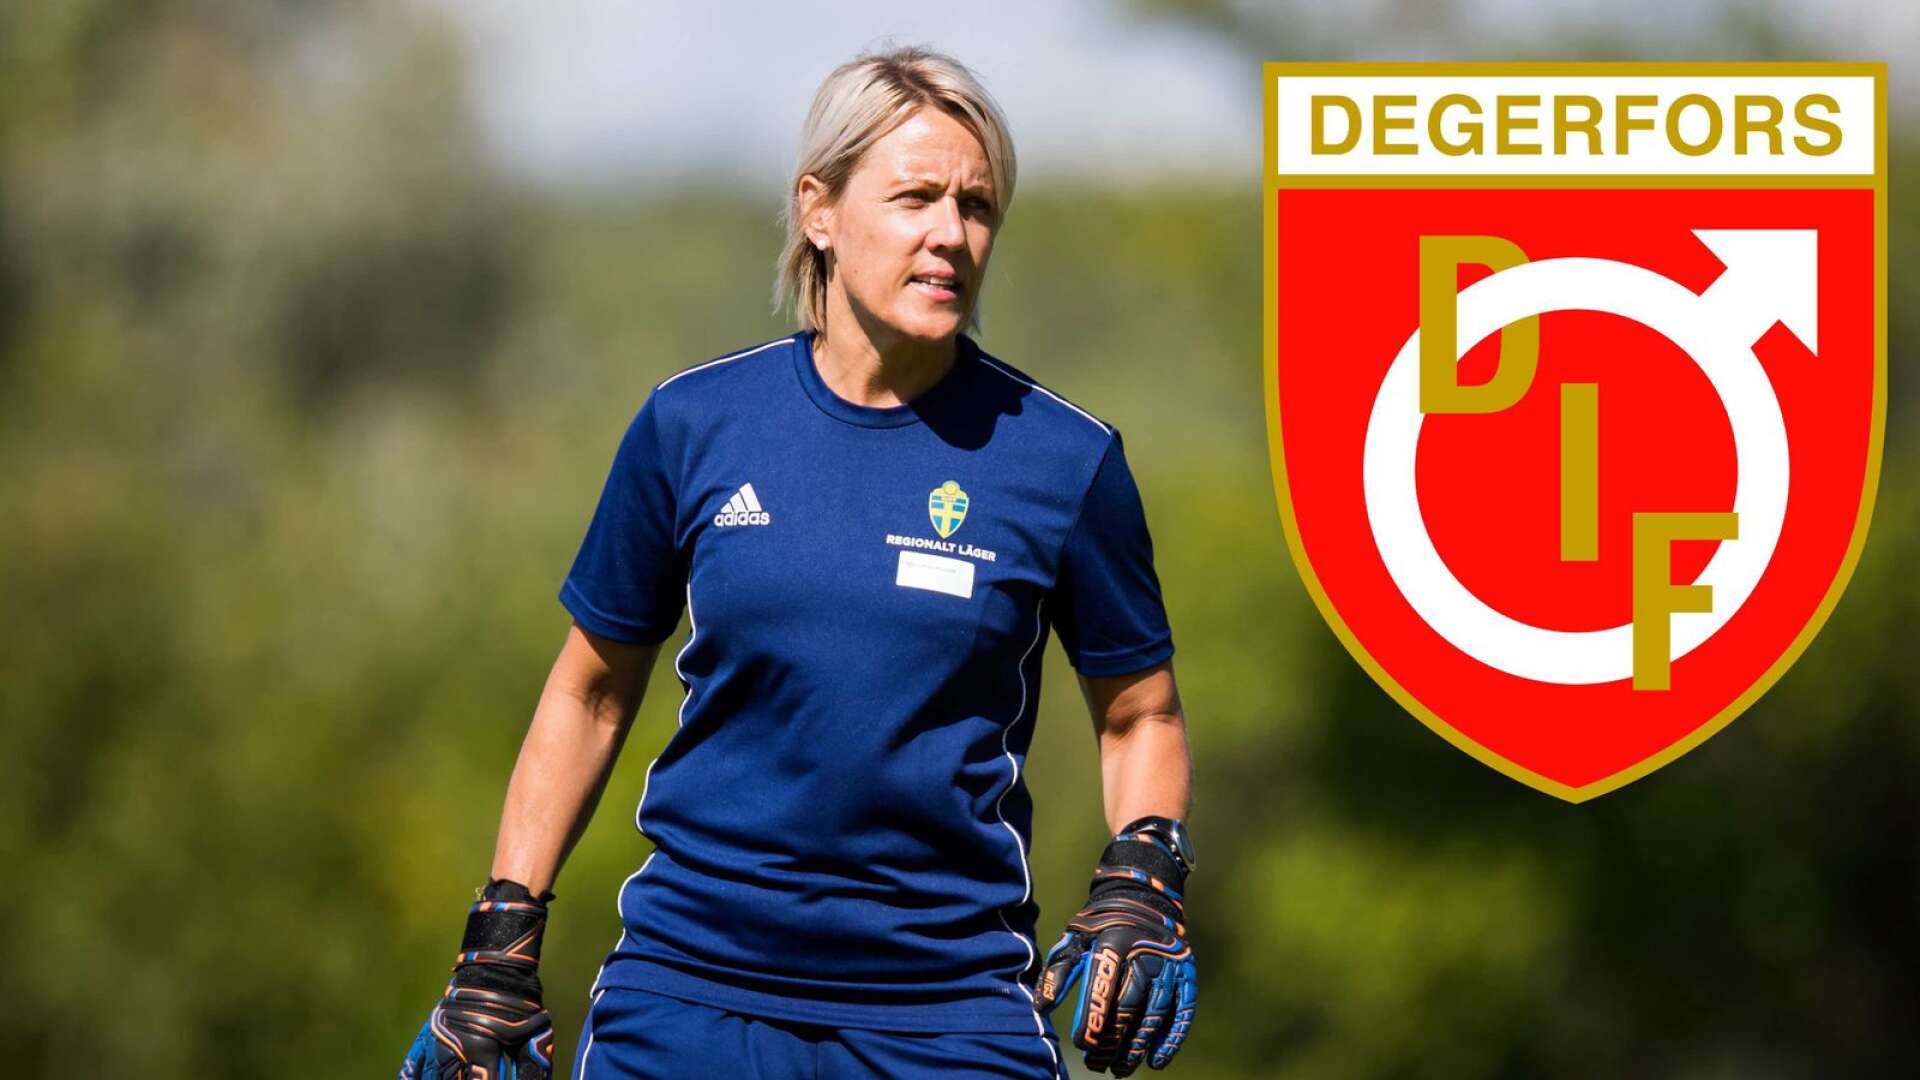 Värmländskan blir en av få kvinnliga ledare i herrfotbollens finrum i Sverige